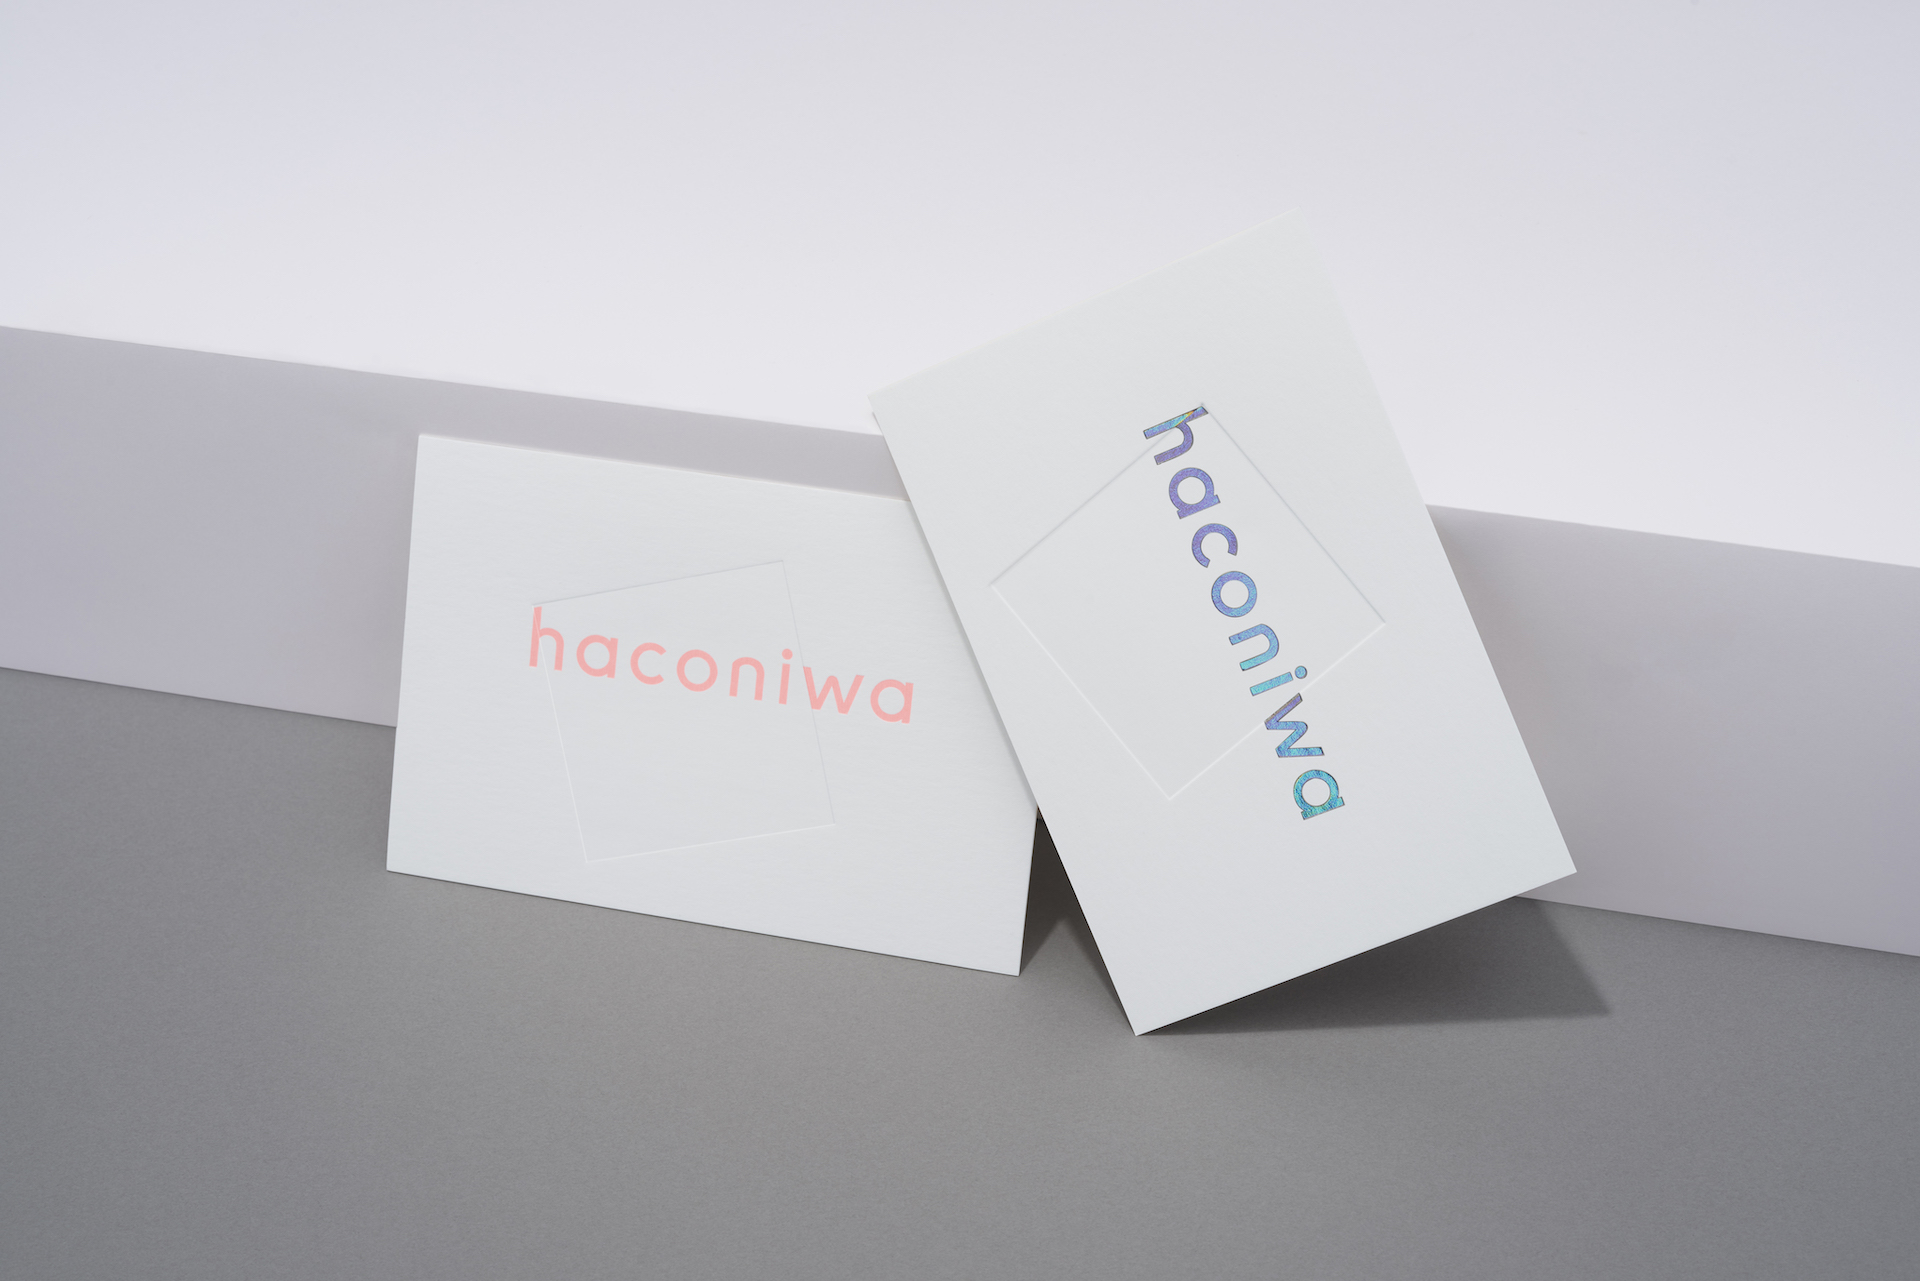 WEBメディア「haconiwa」